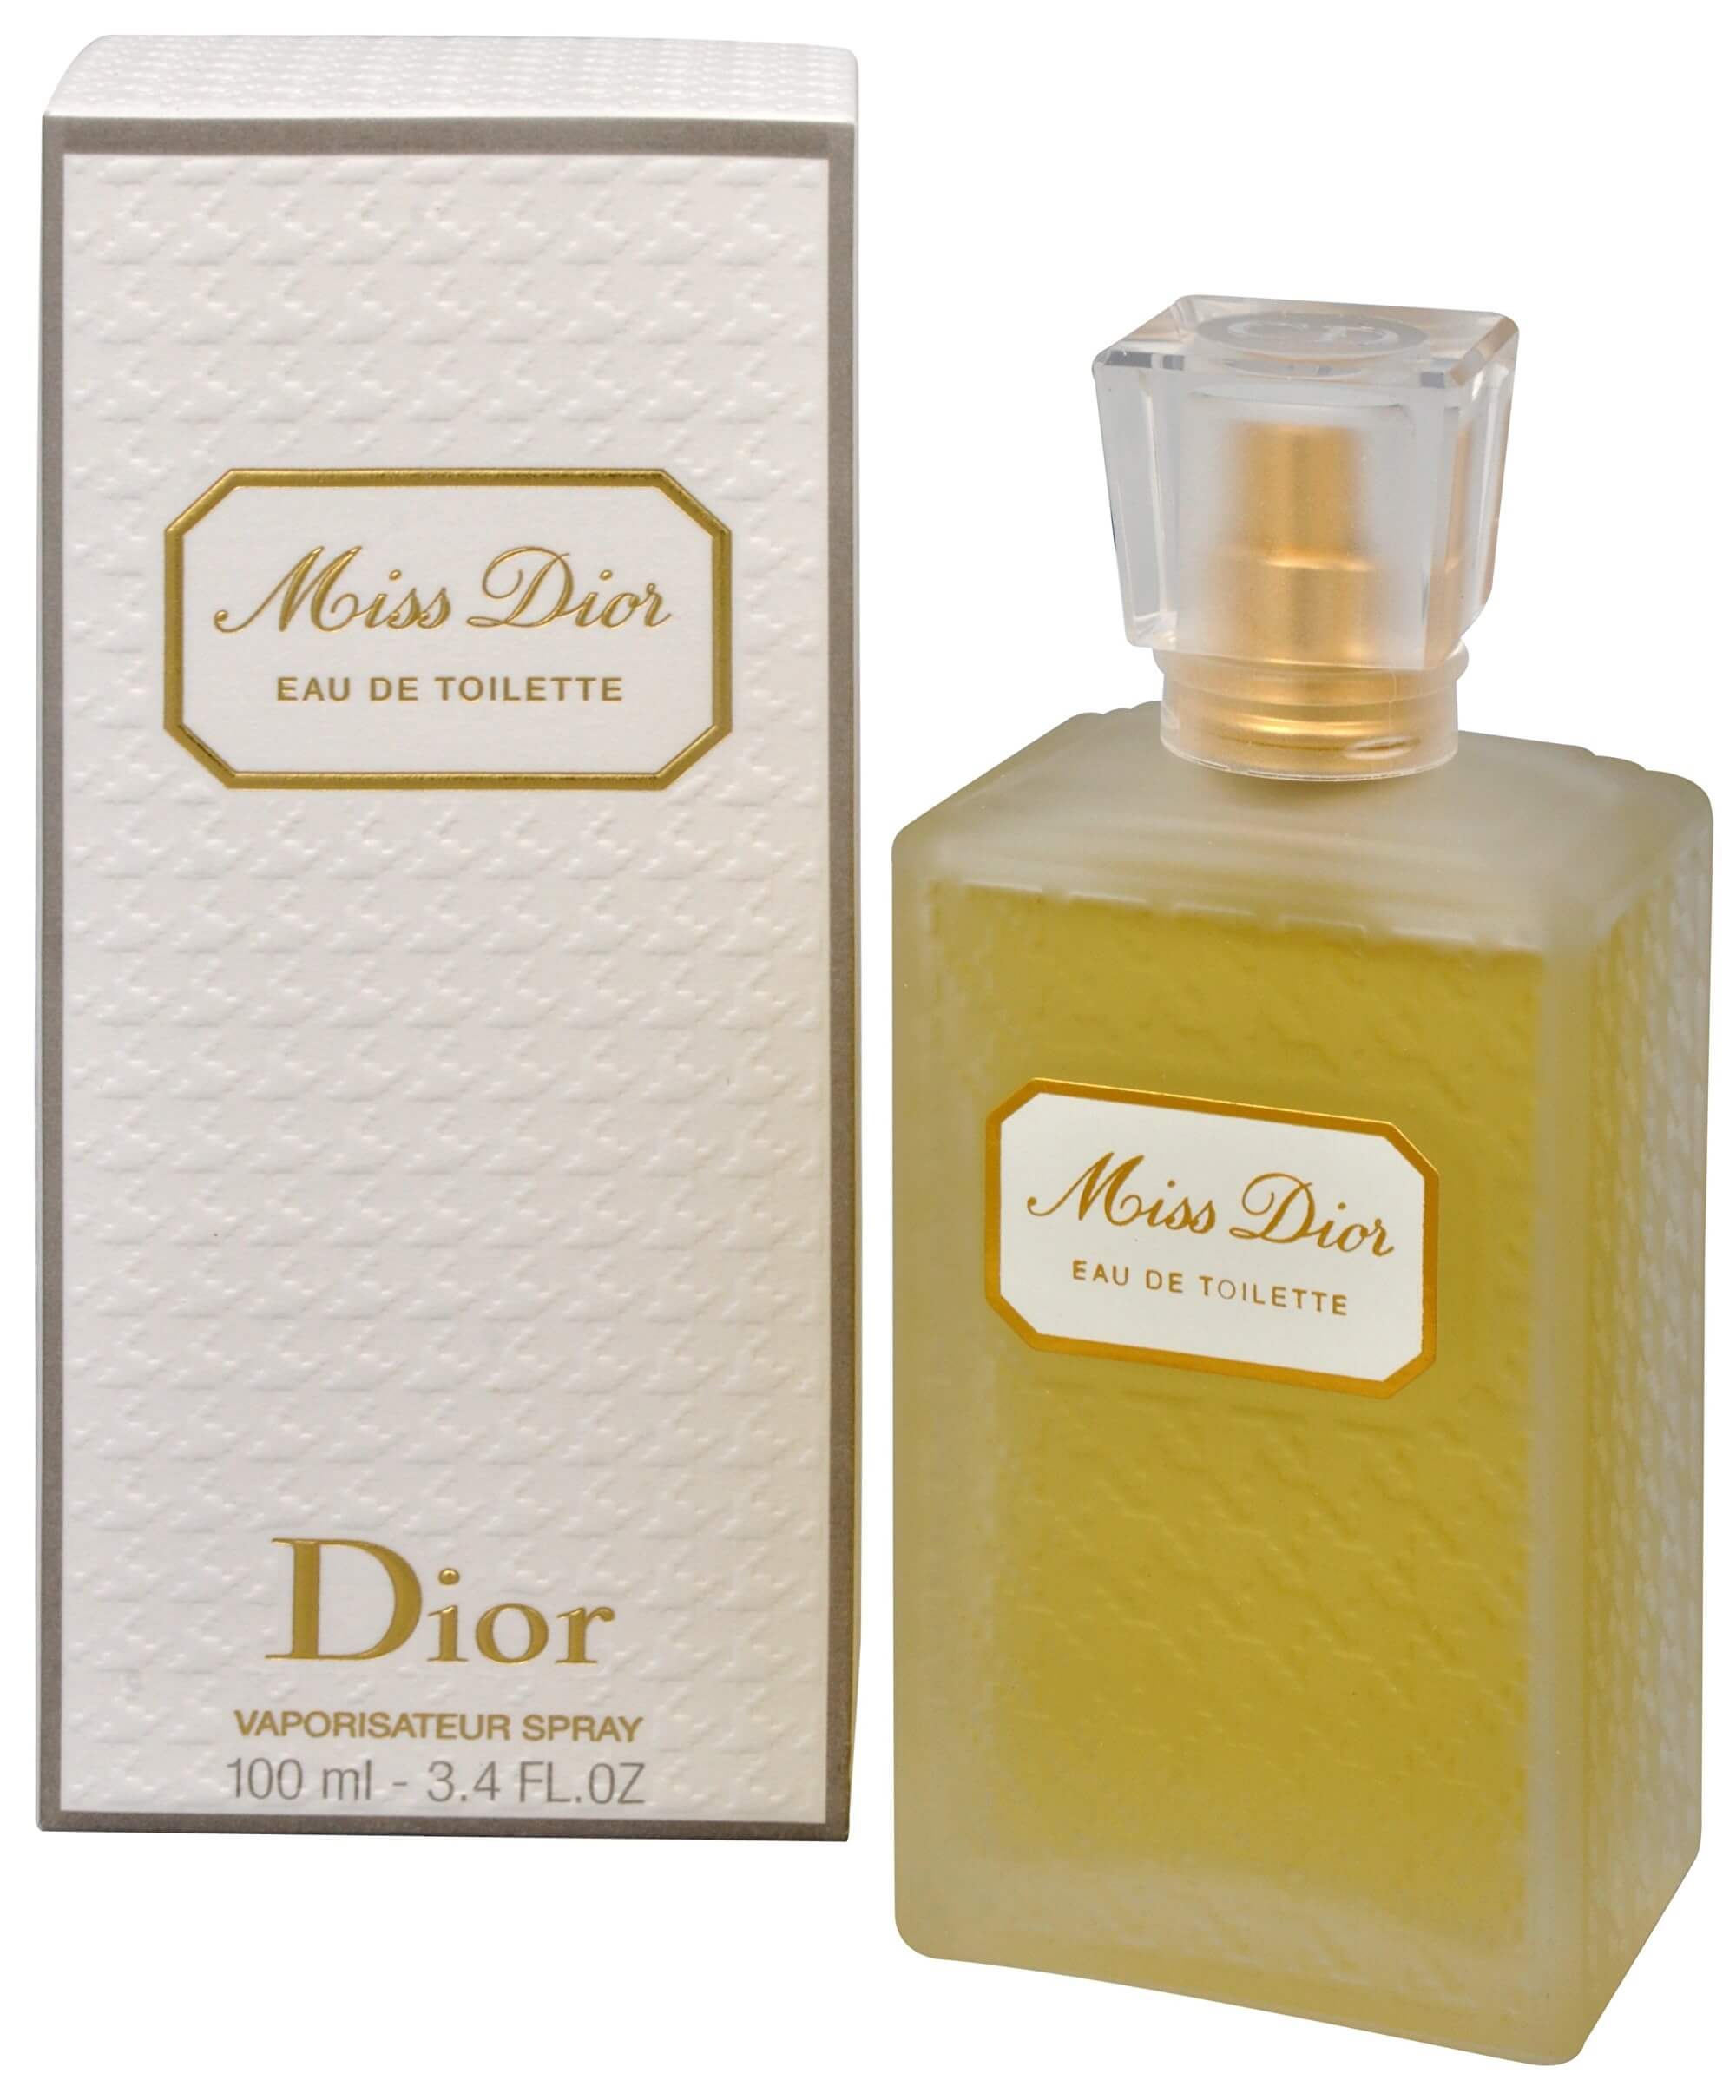 Dior Miss Dior Originale - EDT 50 ml + 2 mesiace na vrátenie tovaru